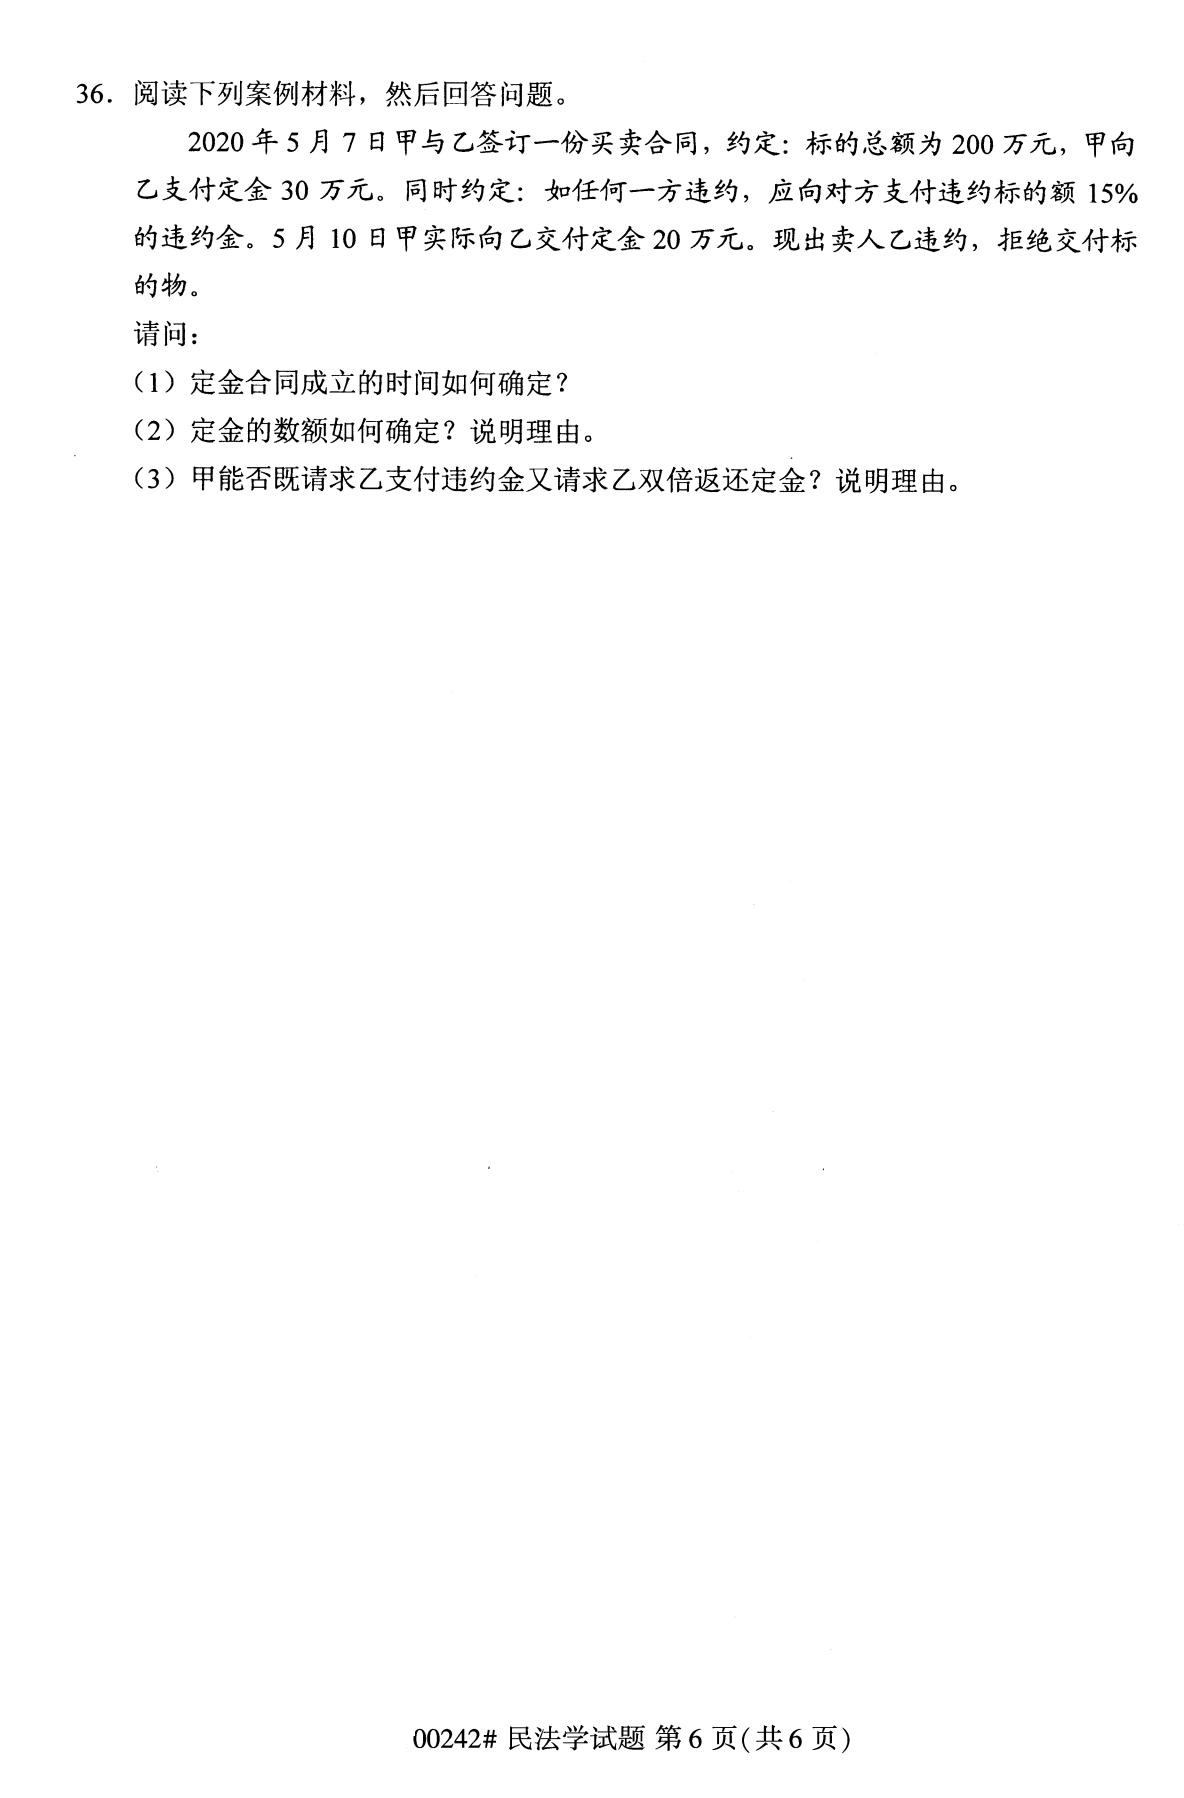 重庆自考2020年10月自学考试民法学00242真题（专科）